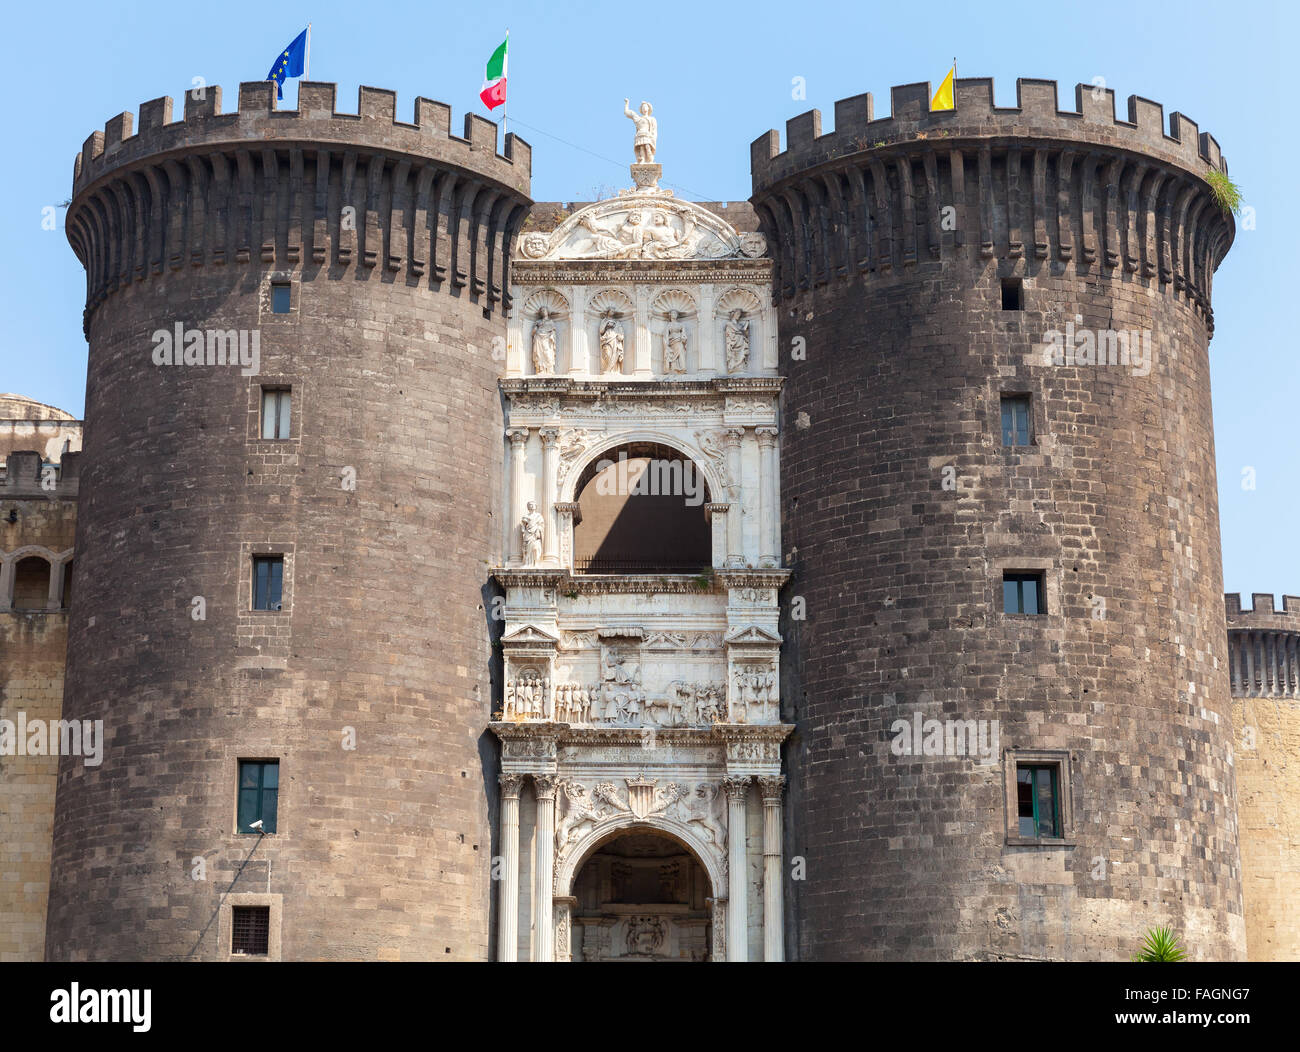 Castel Nouvo. Château médiéval dans la région de Naples, Italie. Il a été érigé en 1279, l'un des principaux monuments architecturaux de la cit Banque D'Images